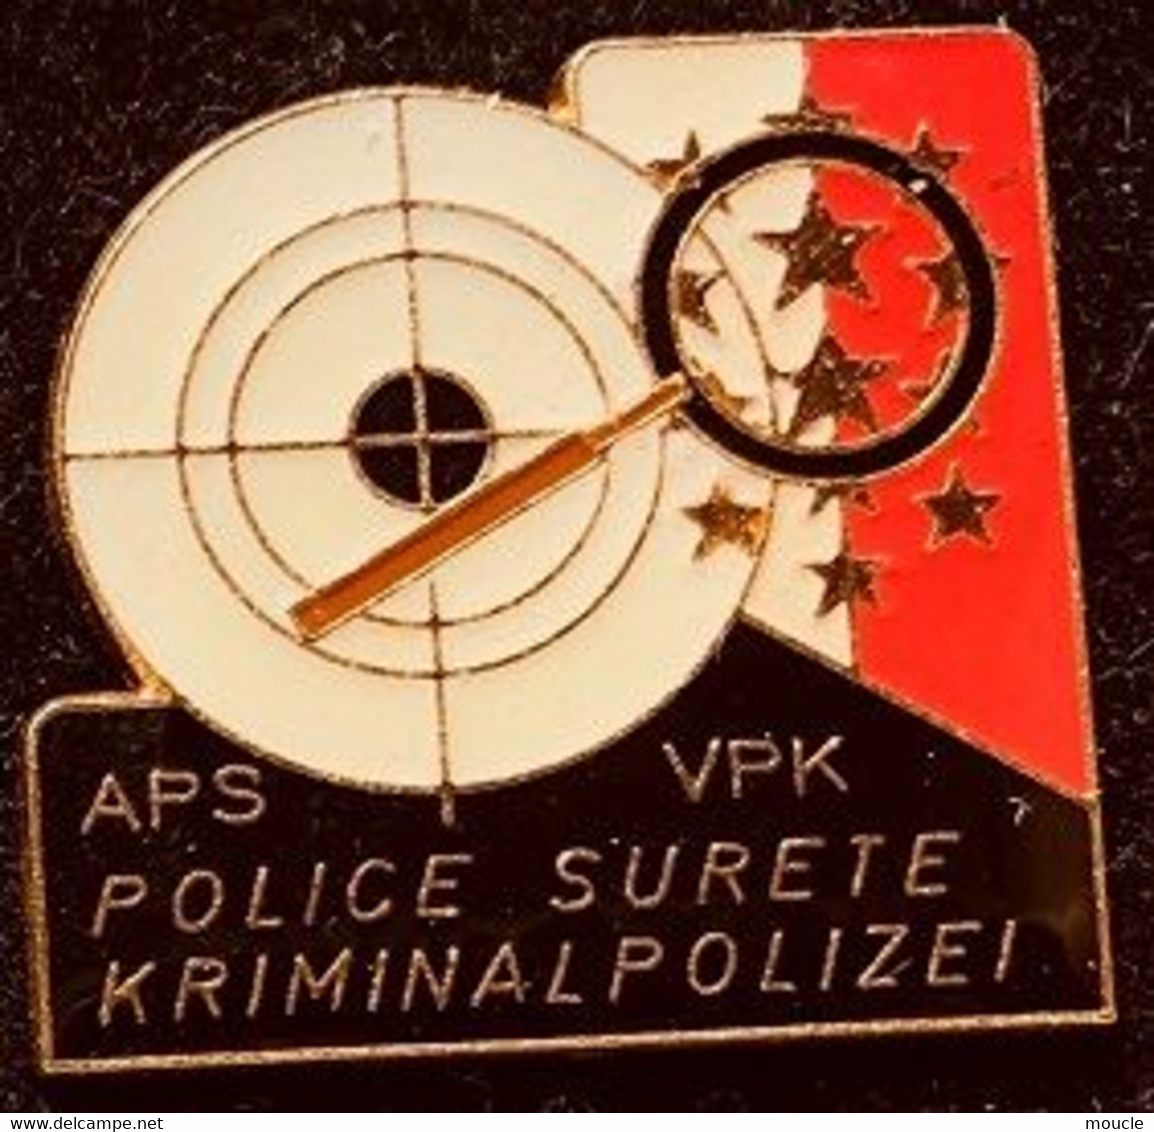 POLICE SURETE VALAISANNE - WALLIS KRIMNAL POLIZEI - SUISSE -  POLICIA - SCHWEIZ - SWITZERLAND - APS - VPK - LOUPE-  (27) - Police